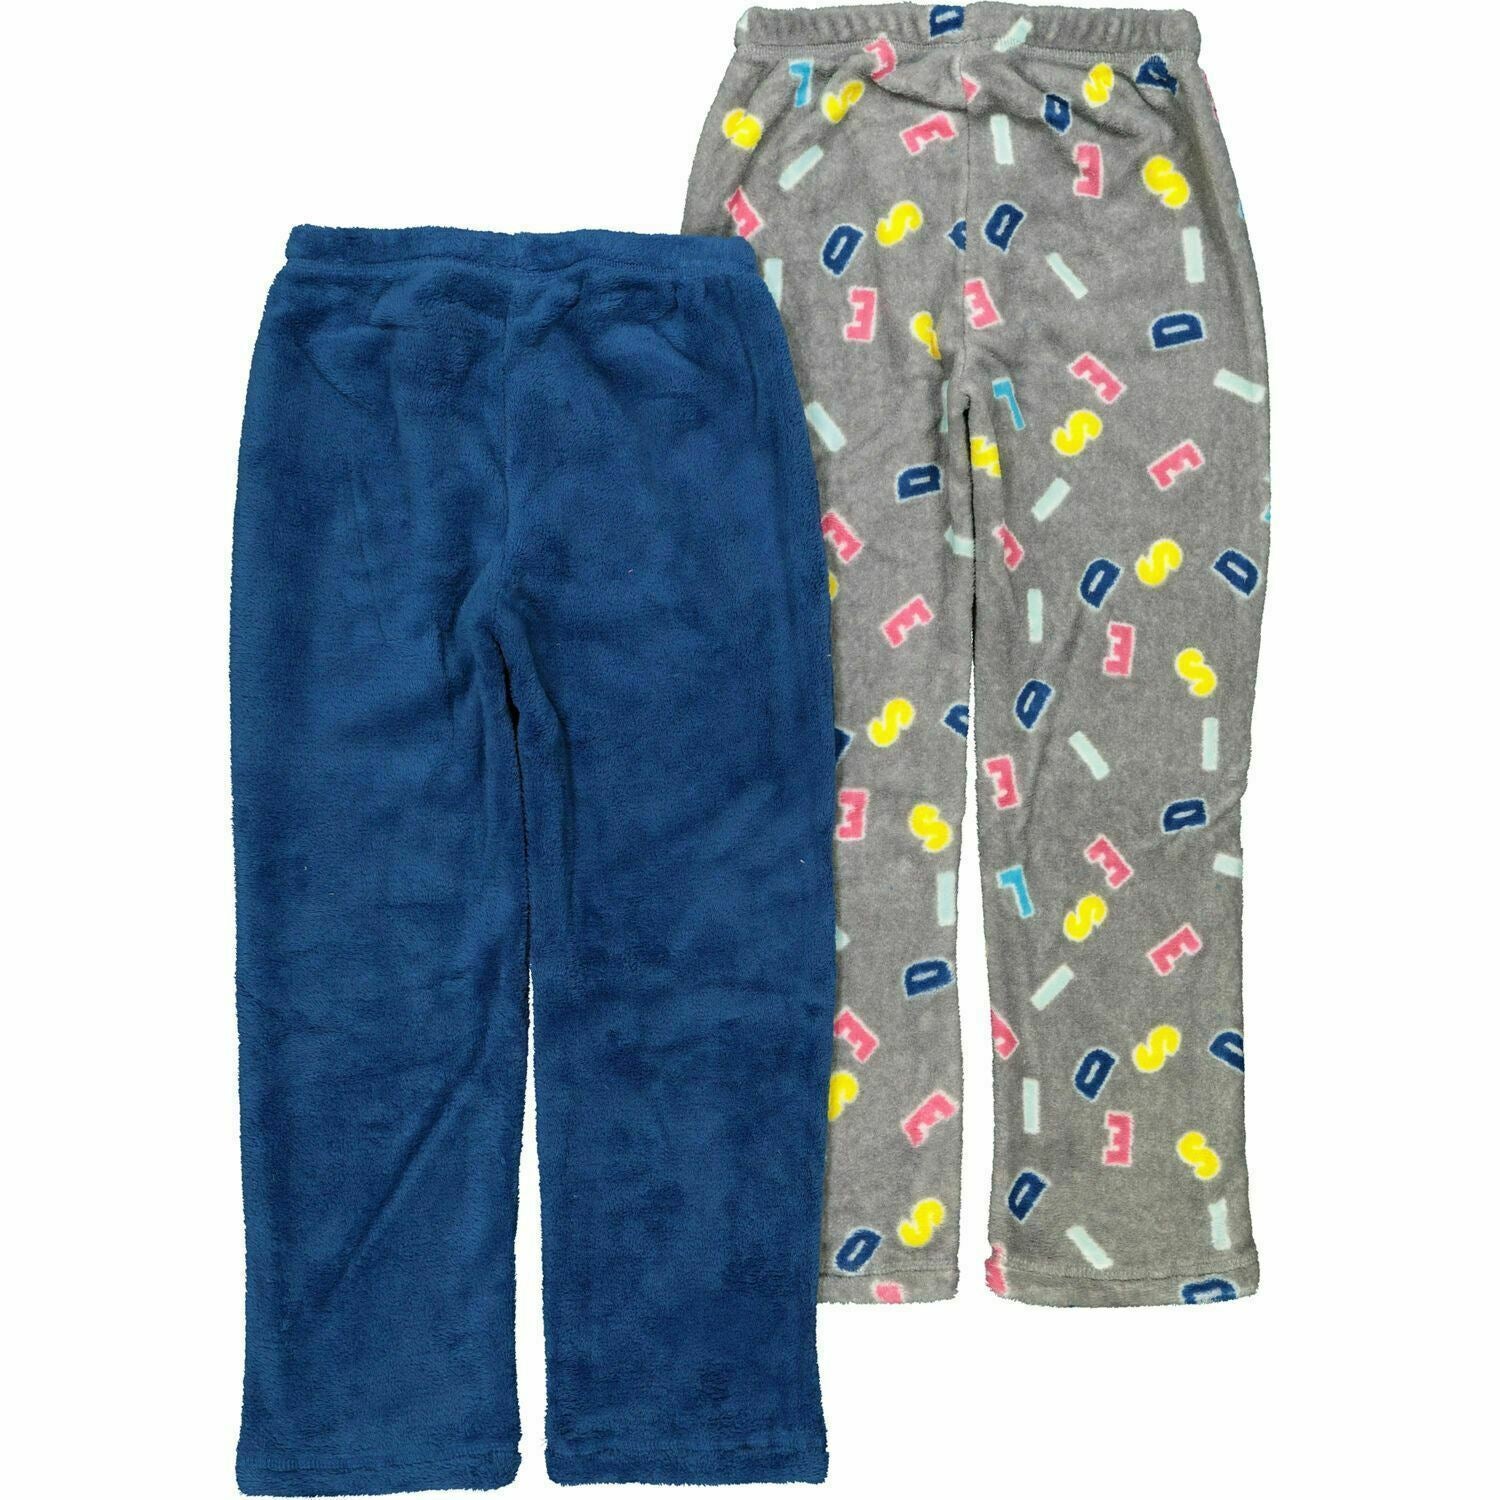 DIESEL 2pk Girls Fleece Loungewear Pants Pyjama Bottoms Joggers Blue/Grey 7 yrs